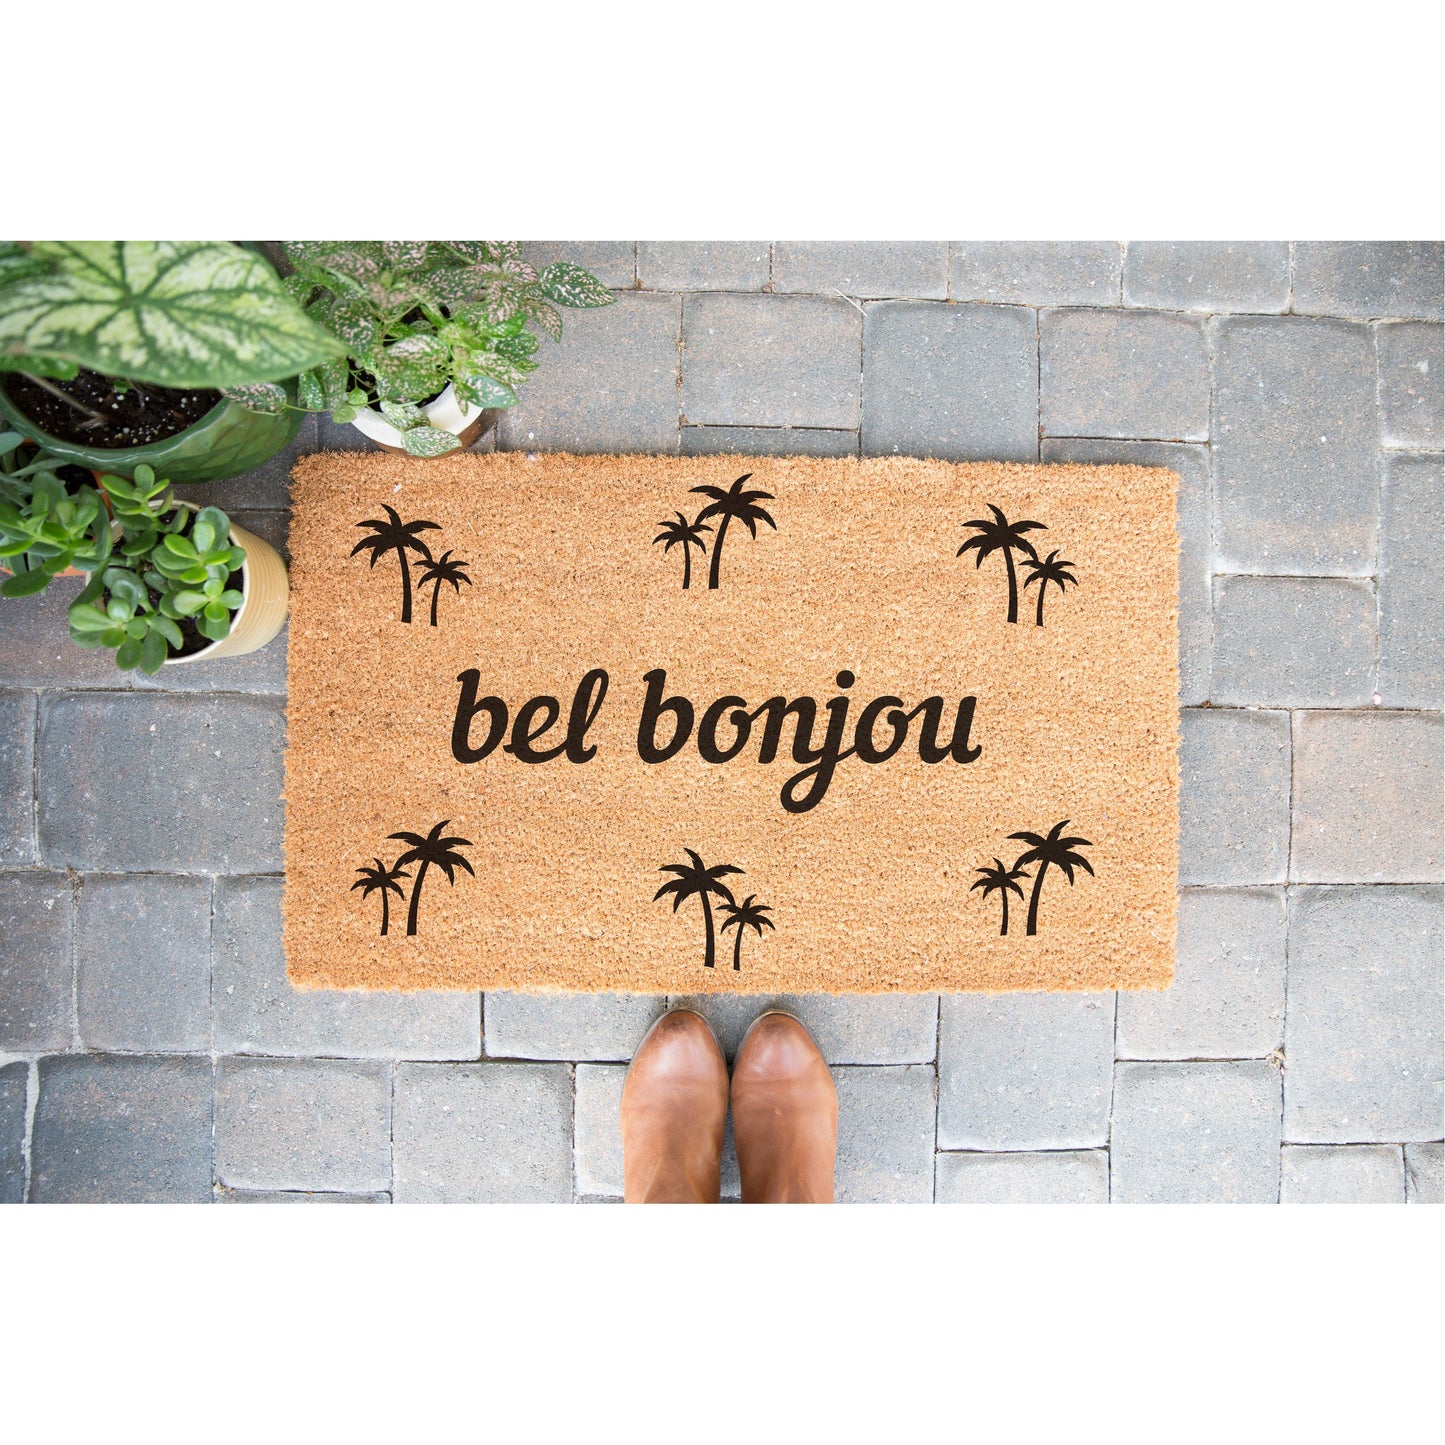 "Bel Bonjou" door mat - Greeting in Antillean Creole